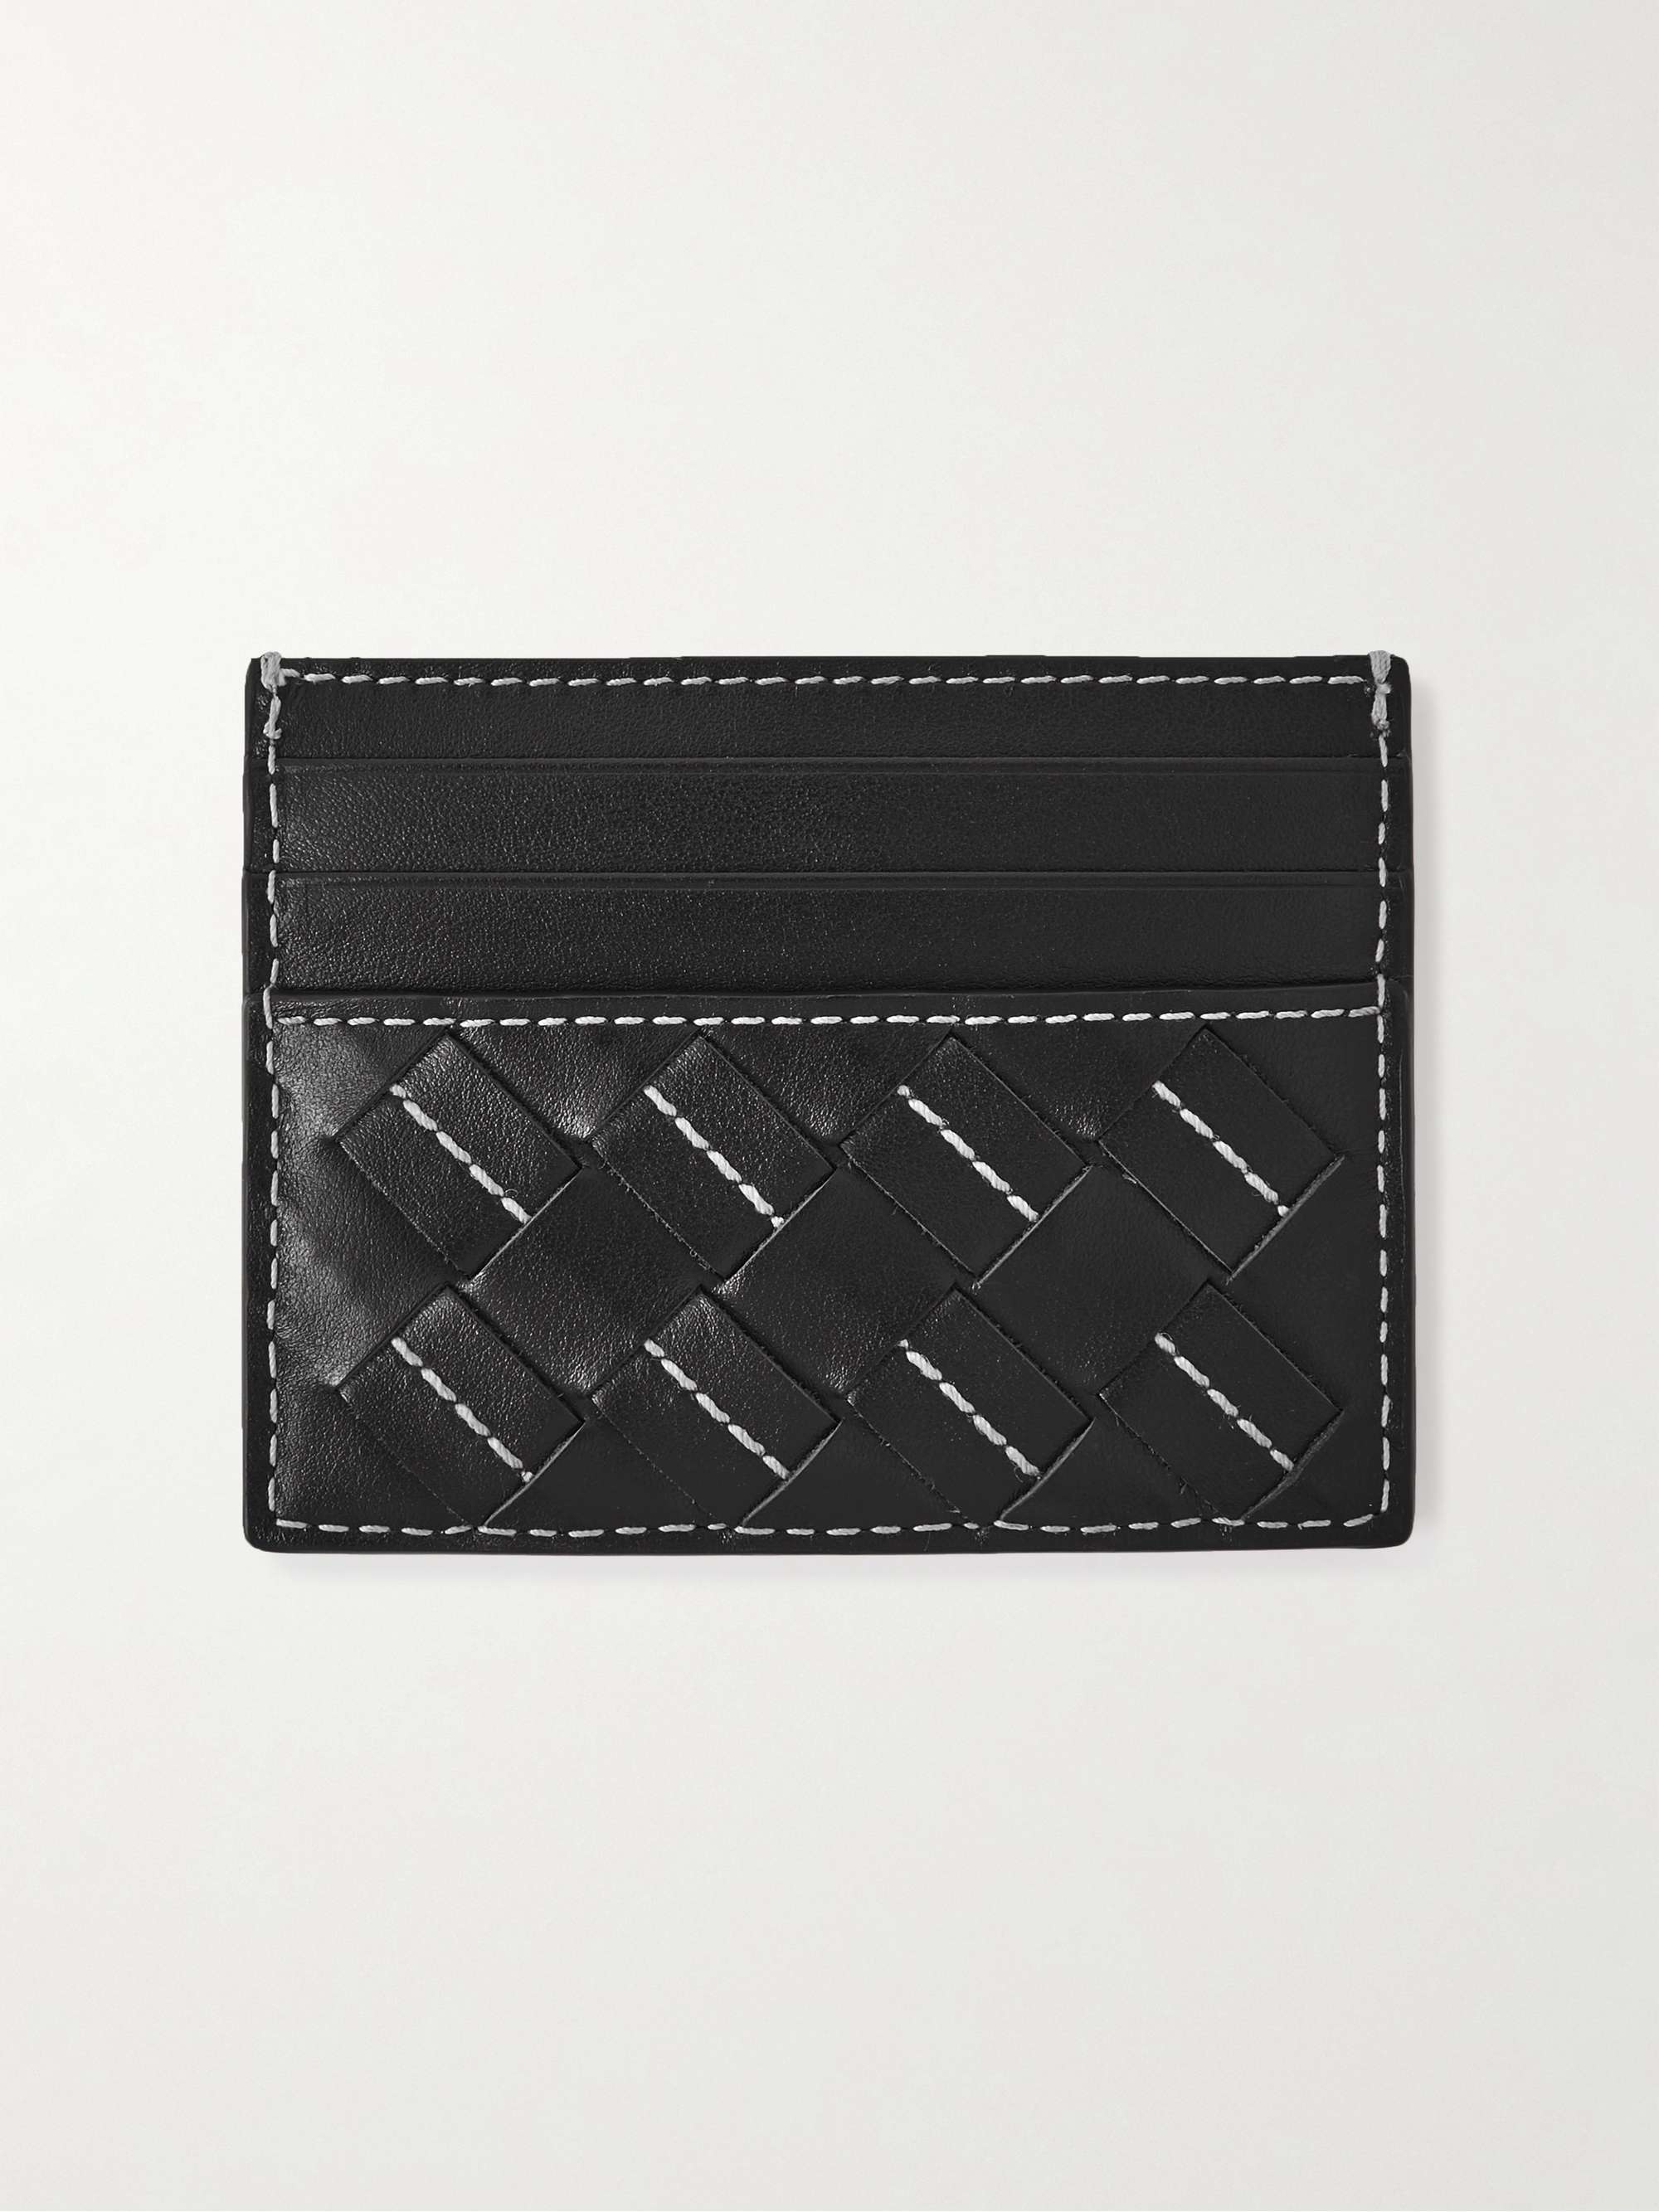 BOTTEGA VENETA Intrecciato Leather Cardholder for Men | MR PORTER